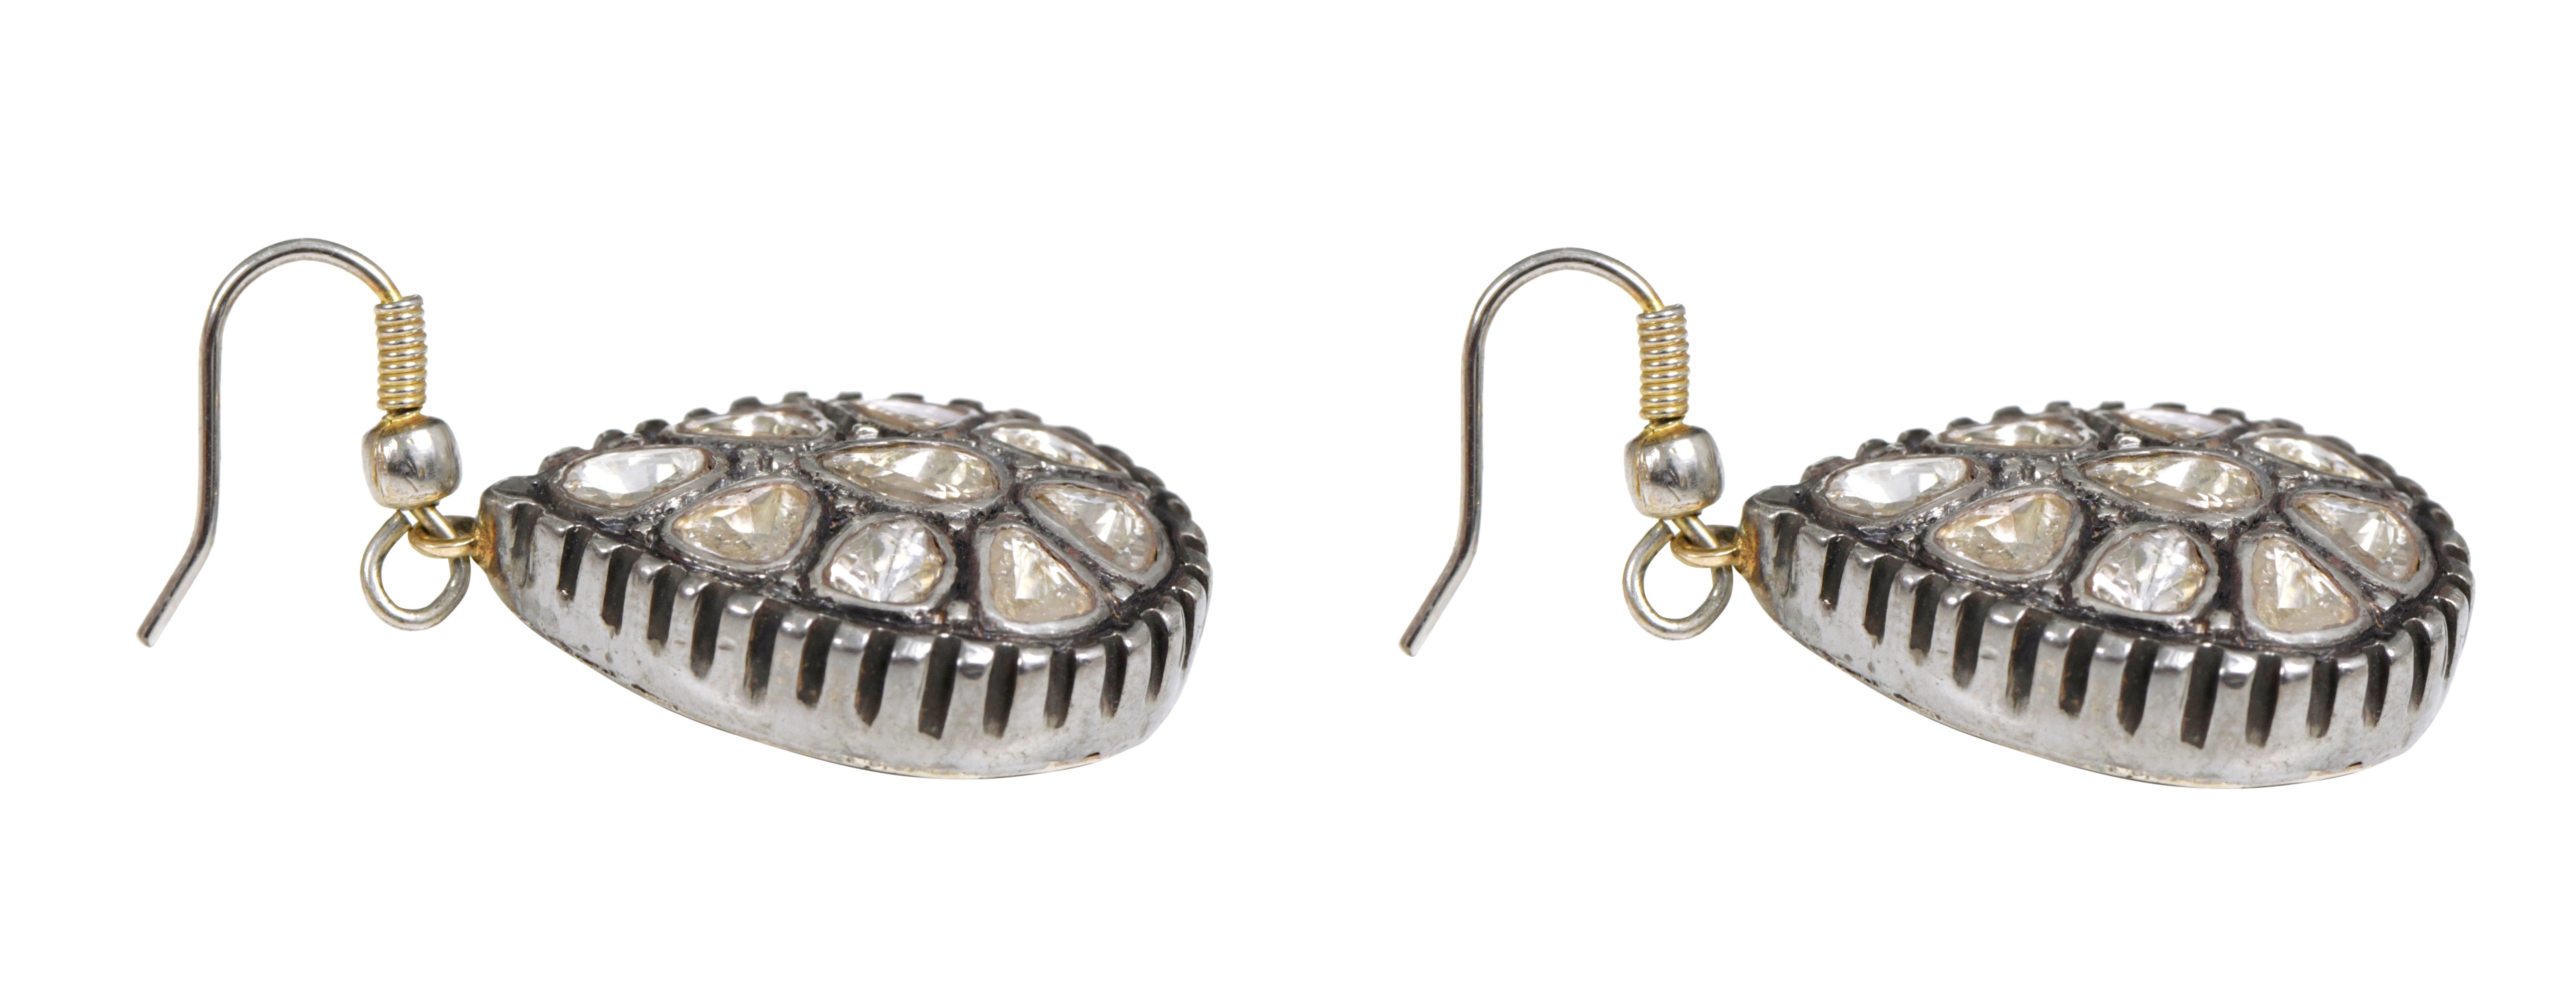 1.71 Carat Diamond Teardrop Earrings in Art-Deco Style For Sale 2